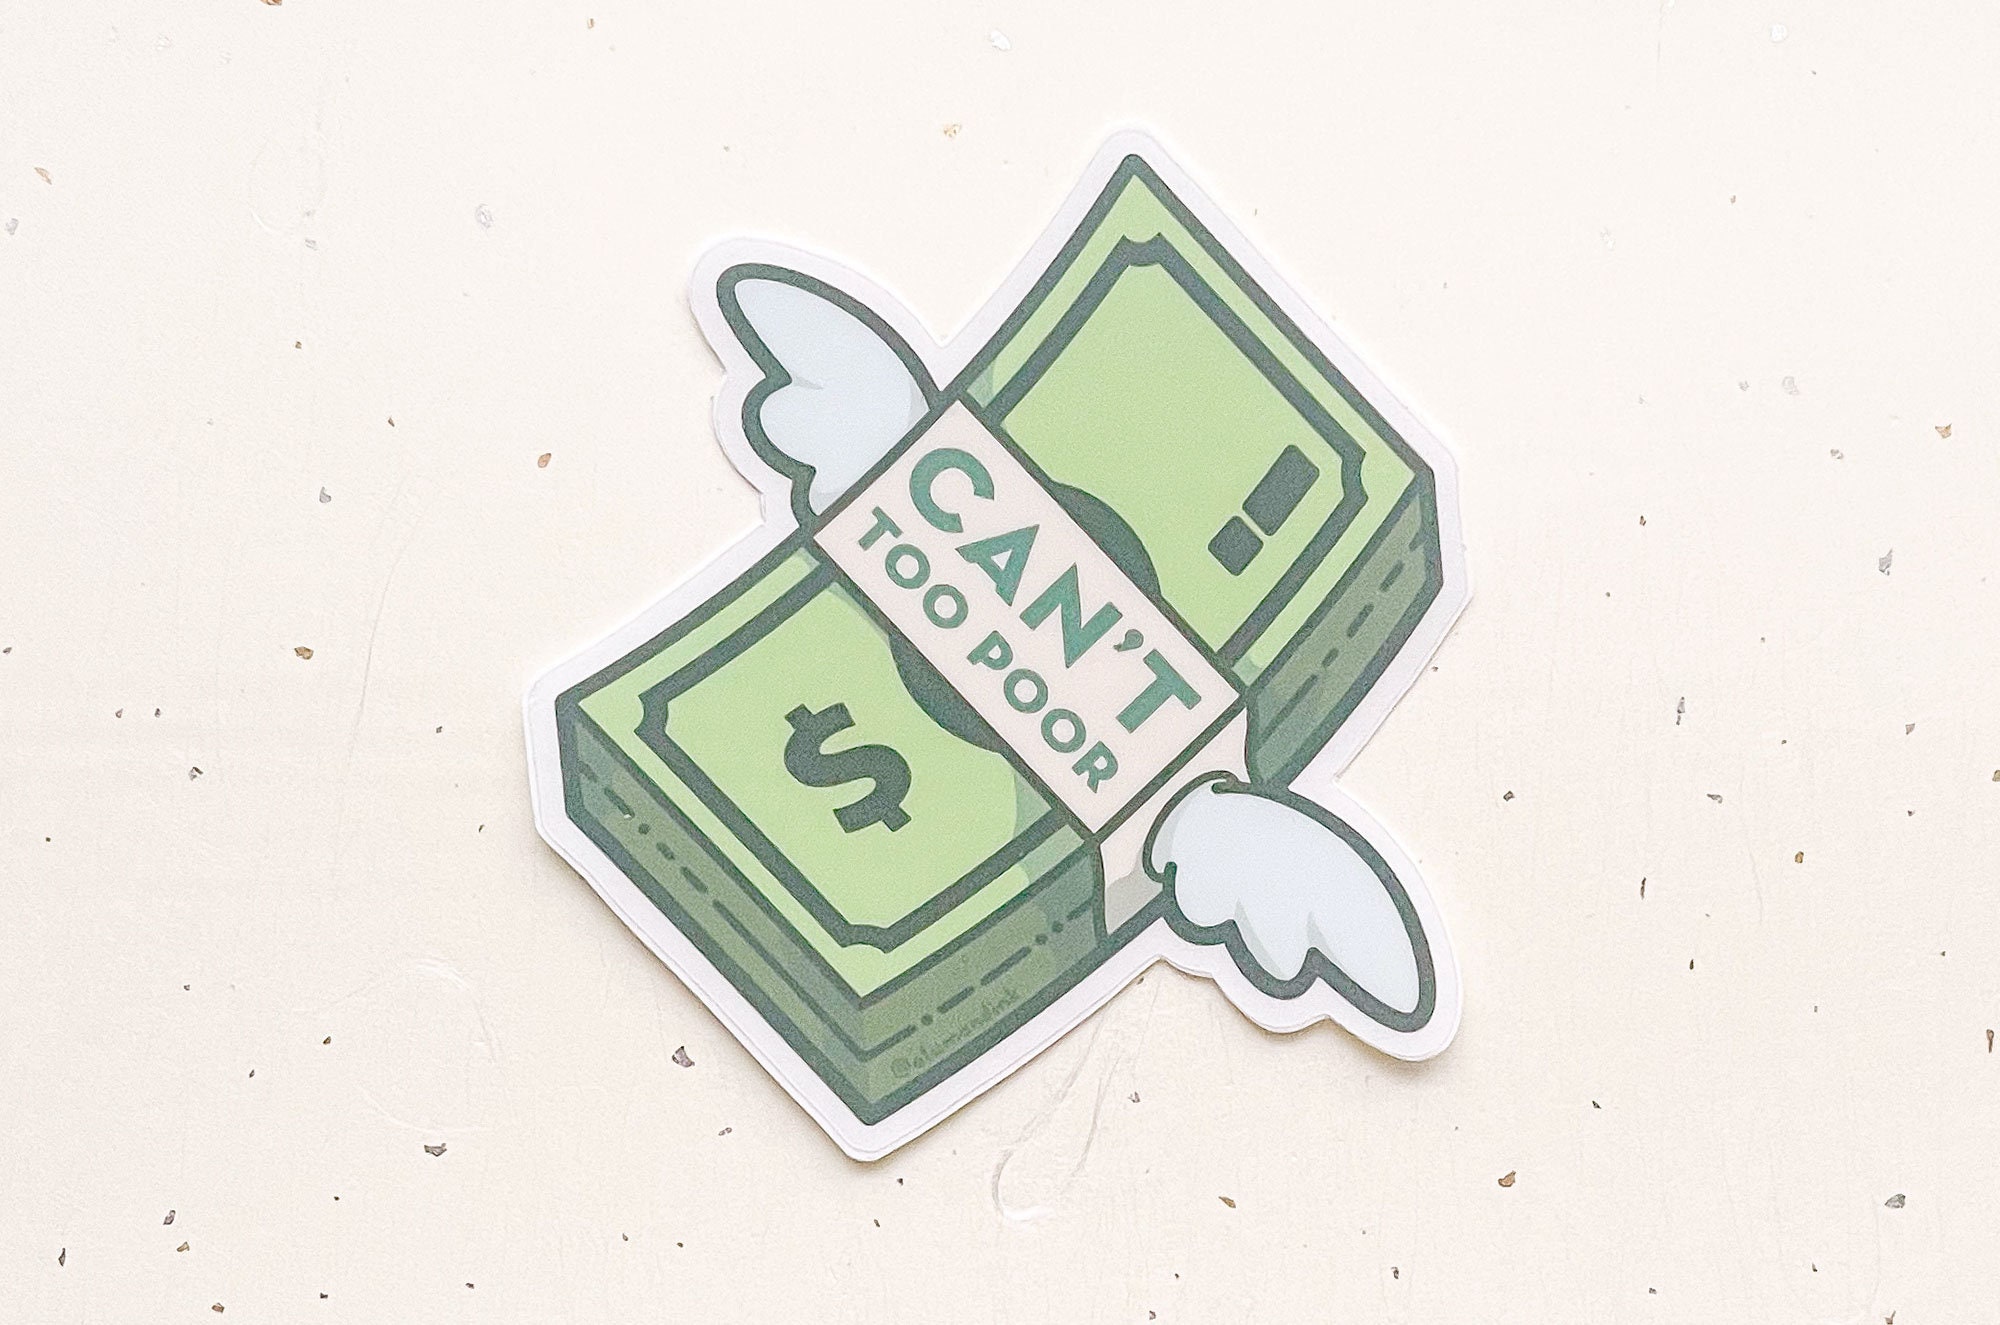 Flying Money Sticker